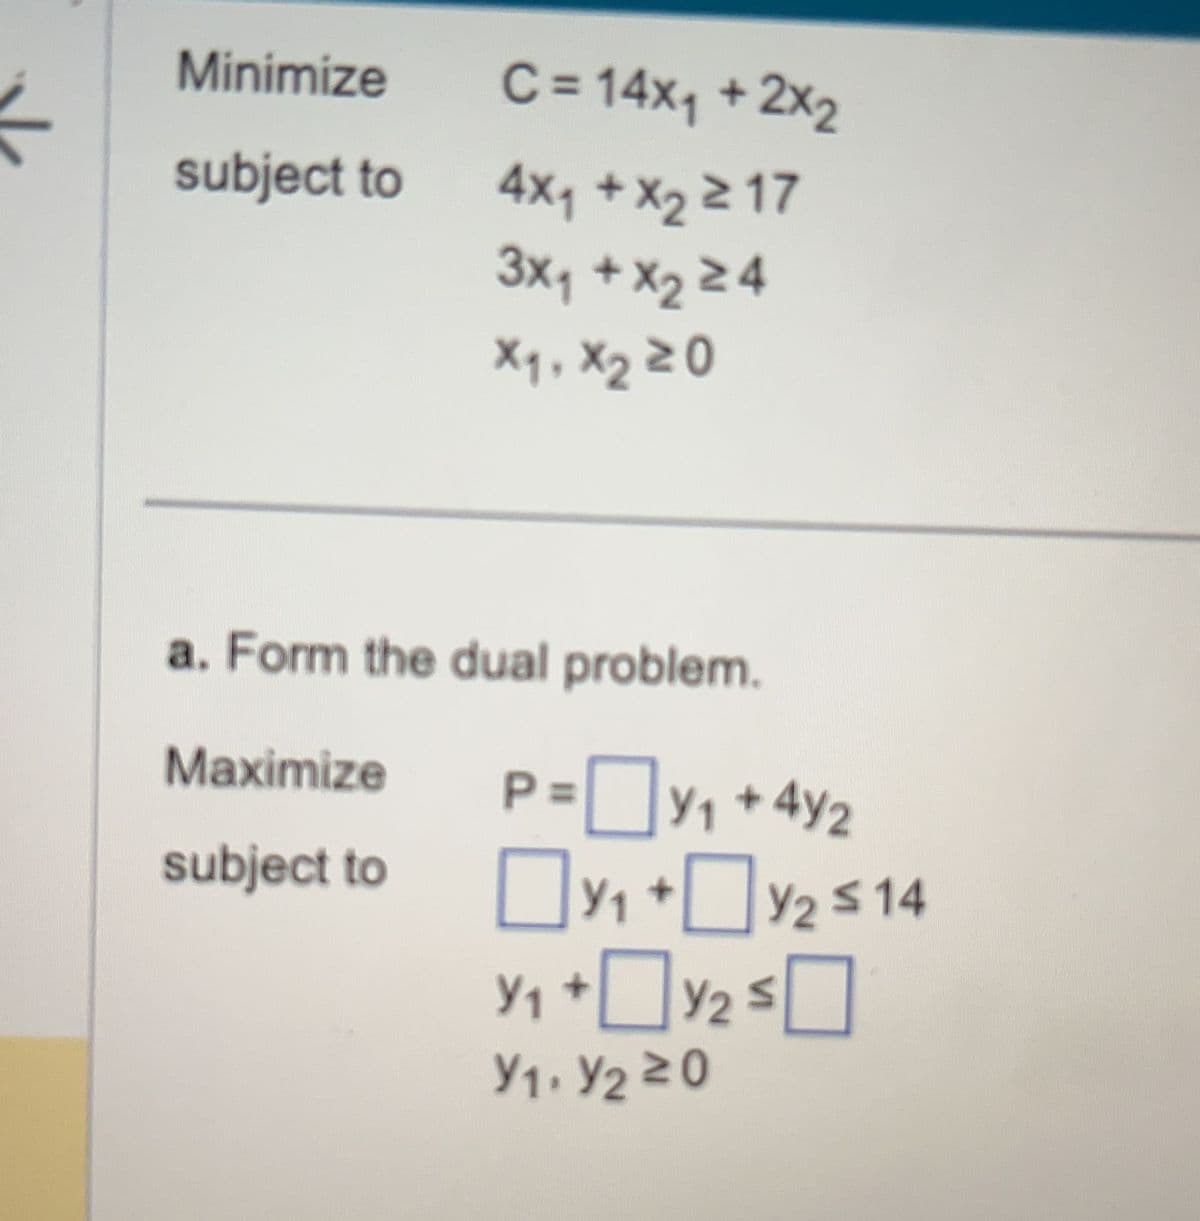 Minimize
subject to
C = 14x₁ + 2x₂
4x₁ + x₂ 217
3X₁ + X₂ ≥4
X₁, X₂ 20
a. Form the dual problem.
Maximize
subject to
P=Y₁ +42
Y₁+
Y₁ +0 Y/2 ≤
Y1. Y₂20
Y2 ≤14